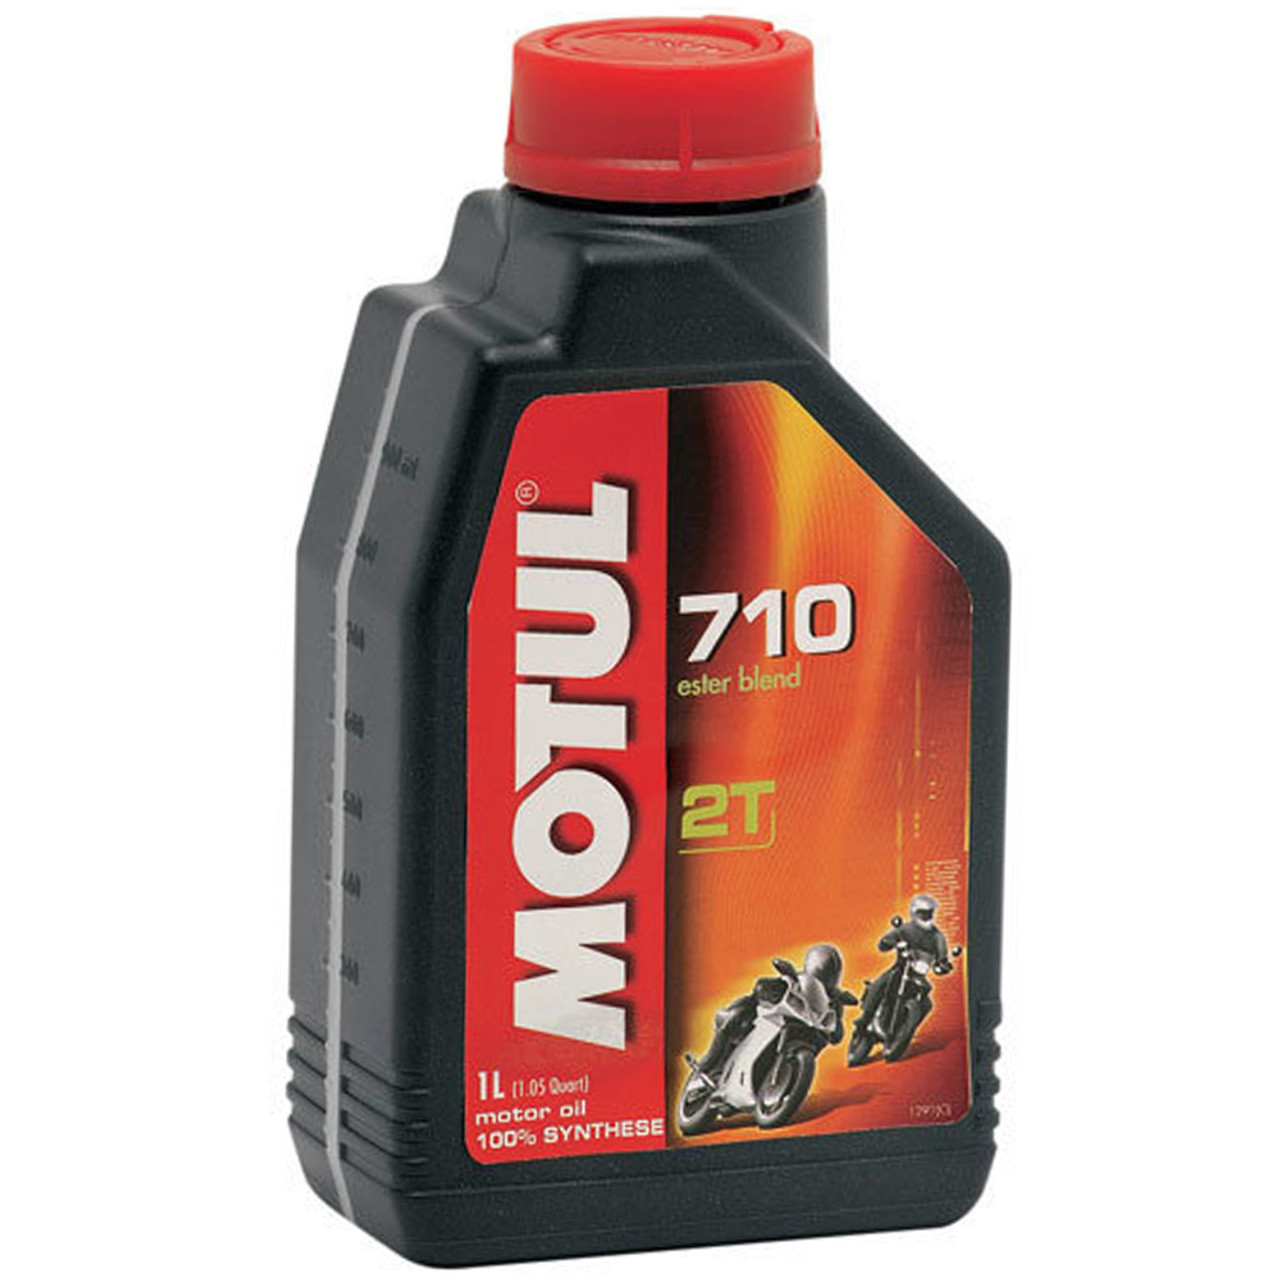 Motul 710 2T Synthetic Motor Oil